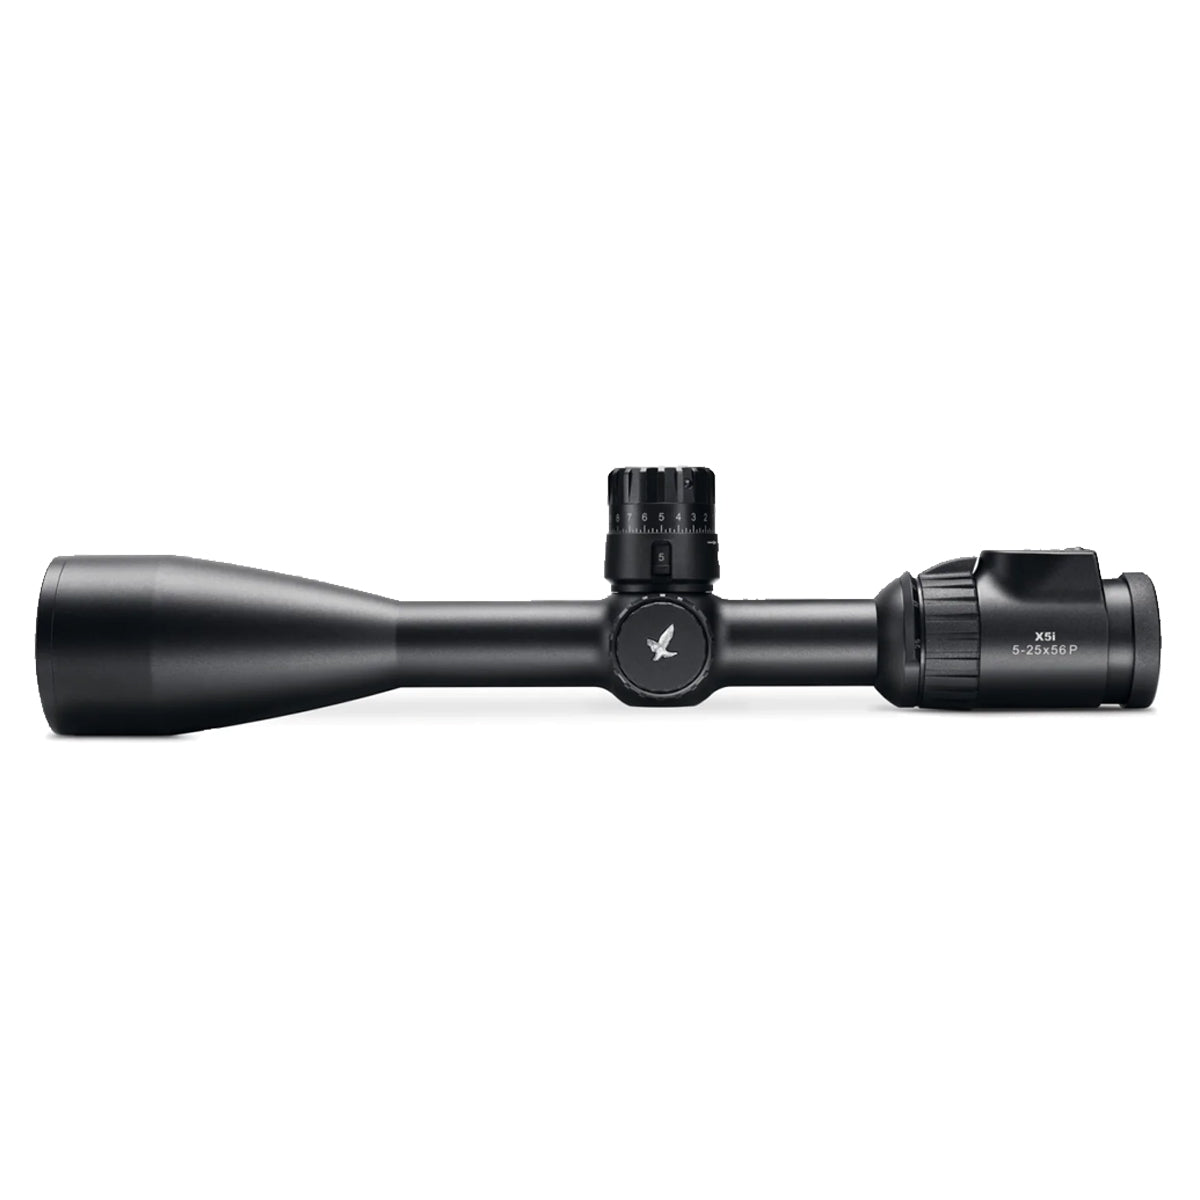 Swarovski X5i 5-25x56 PL 1/4 MOA Riflescope in  by GOHUNT | Swarovski Optik - GOHUNT Shop